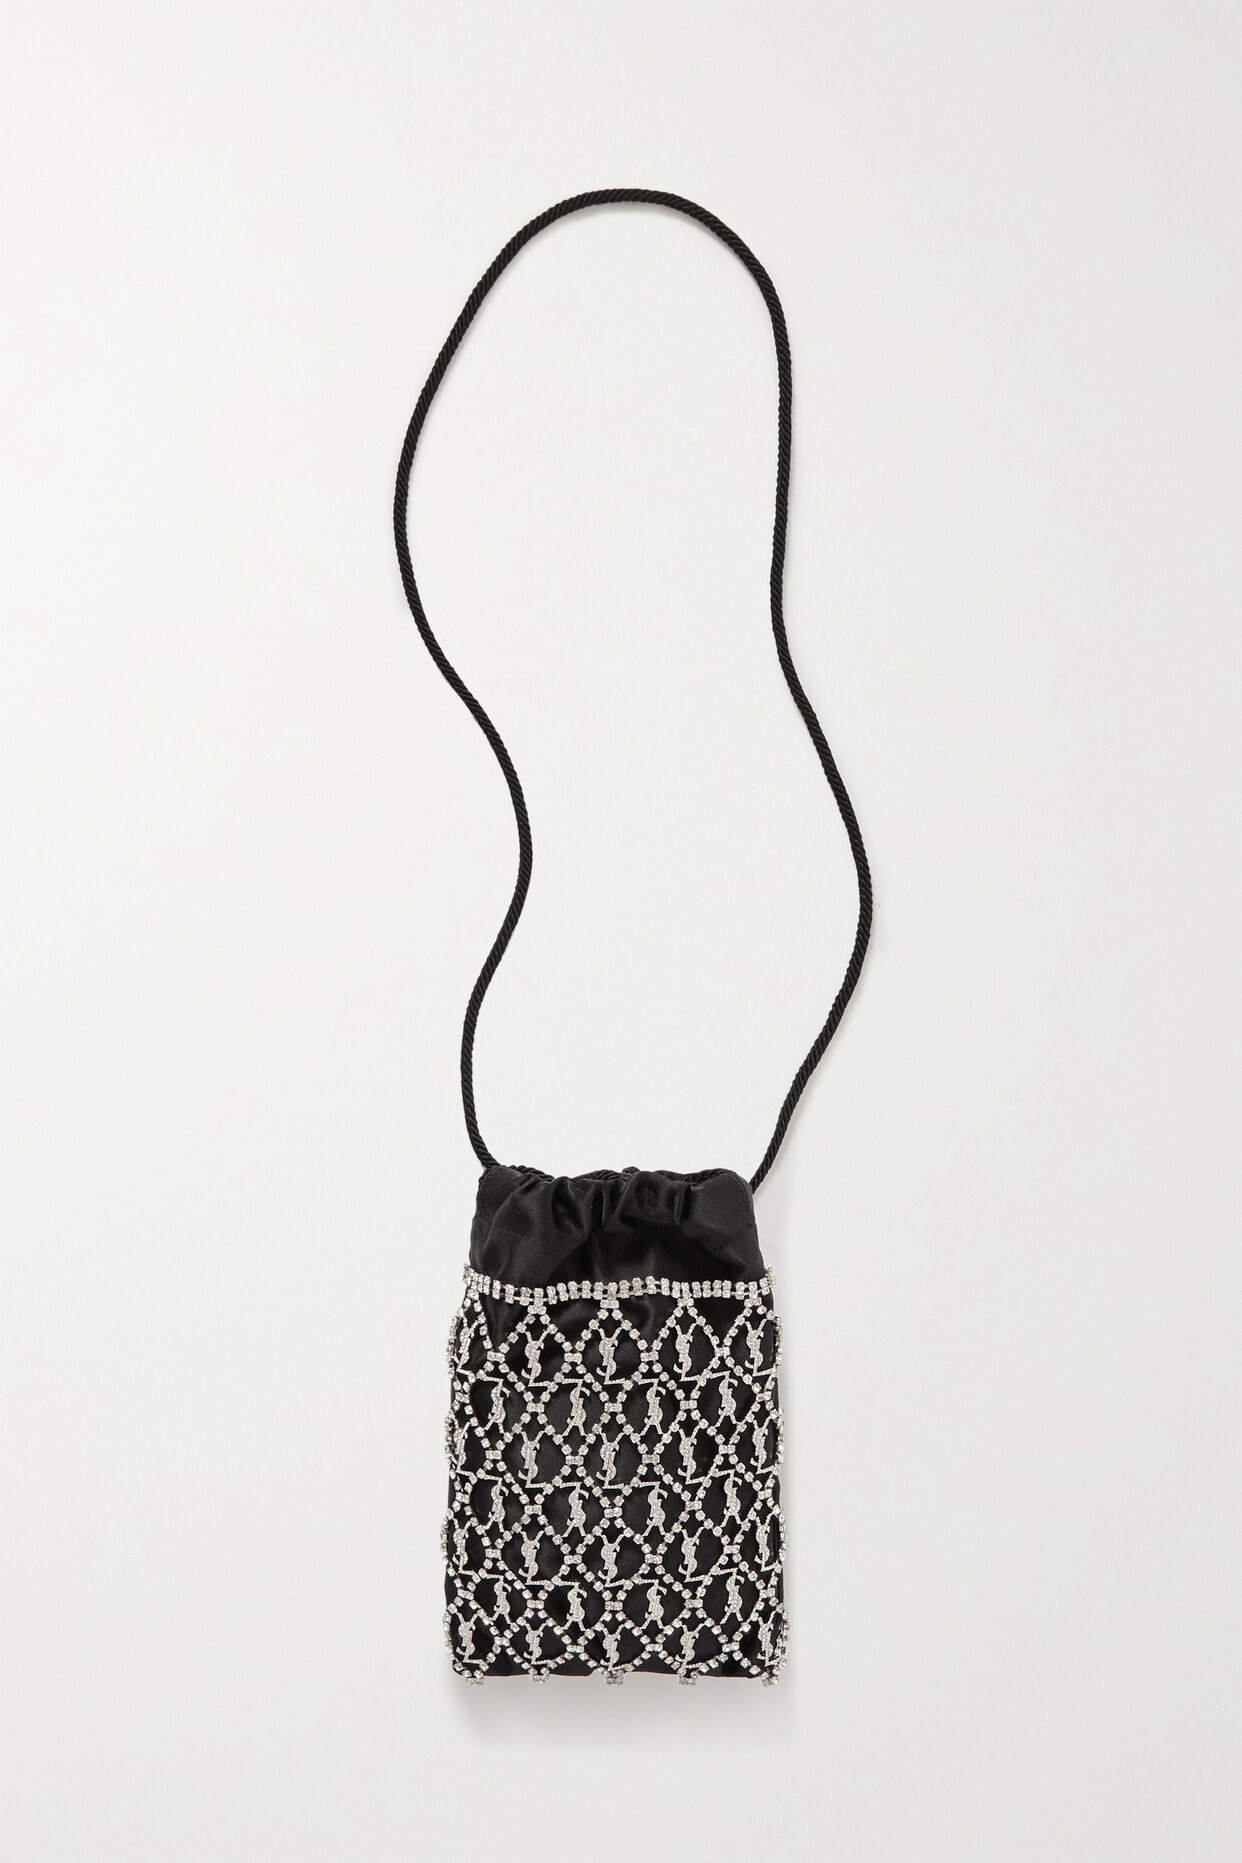 SAINT LAURENT - Crystal-embellished Satin Shoulder Bag - Black